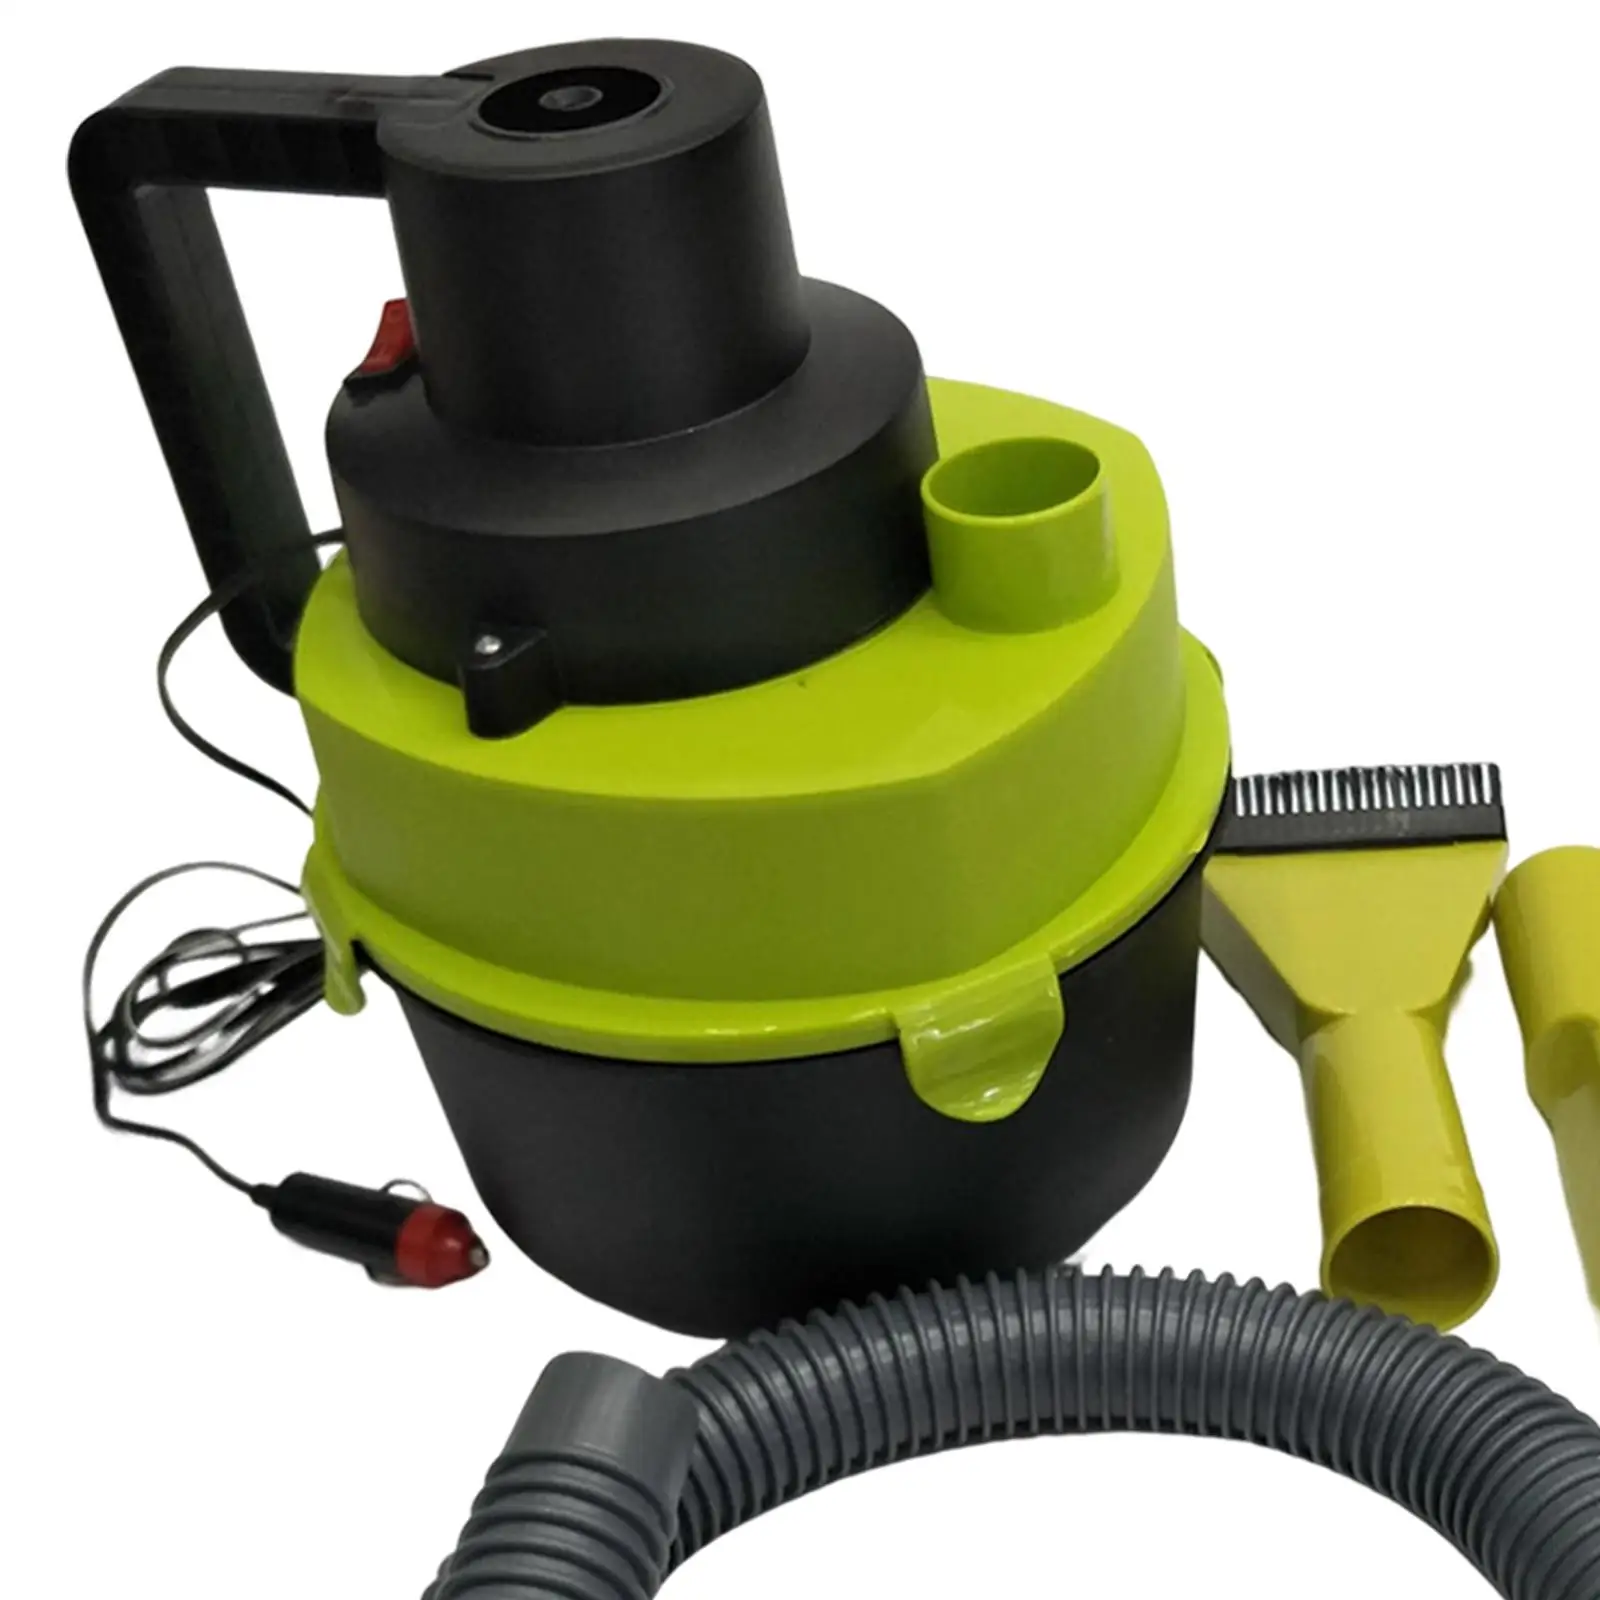 Portable Shop Vacuum with Attachments 4L Dual Use Debris Liquid Shop Vacuum Cleaner for Workshop Corners Garage Carpet Cars